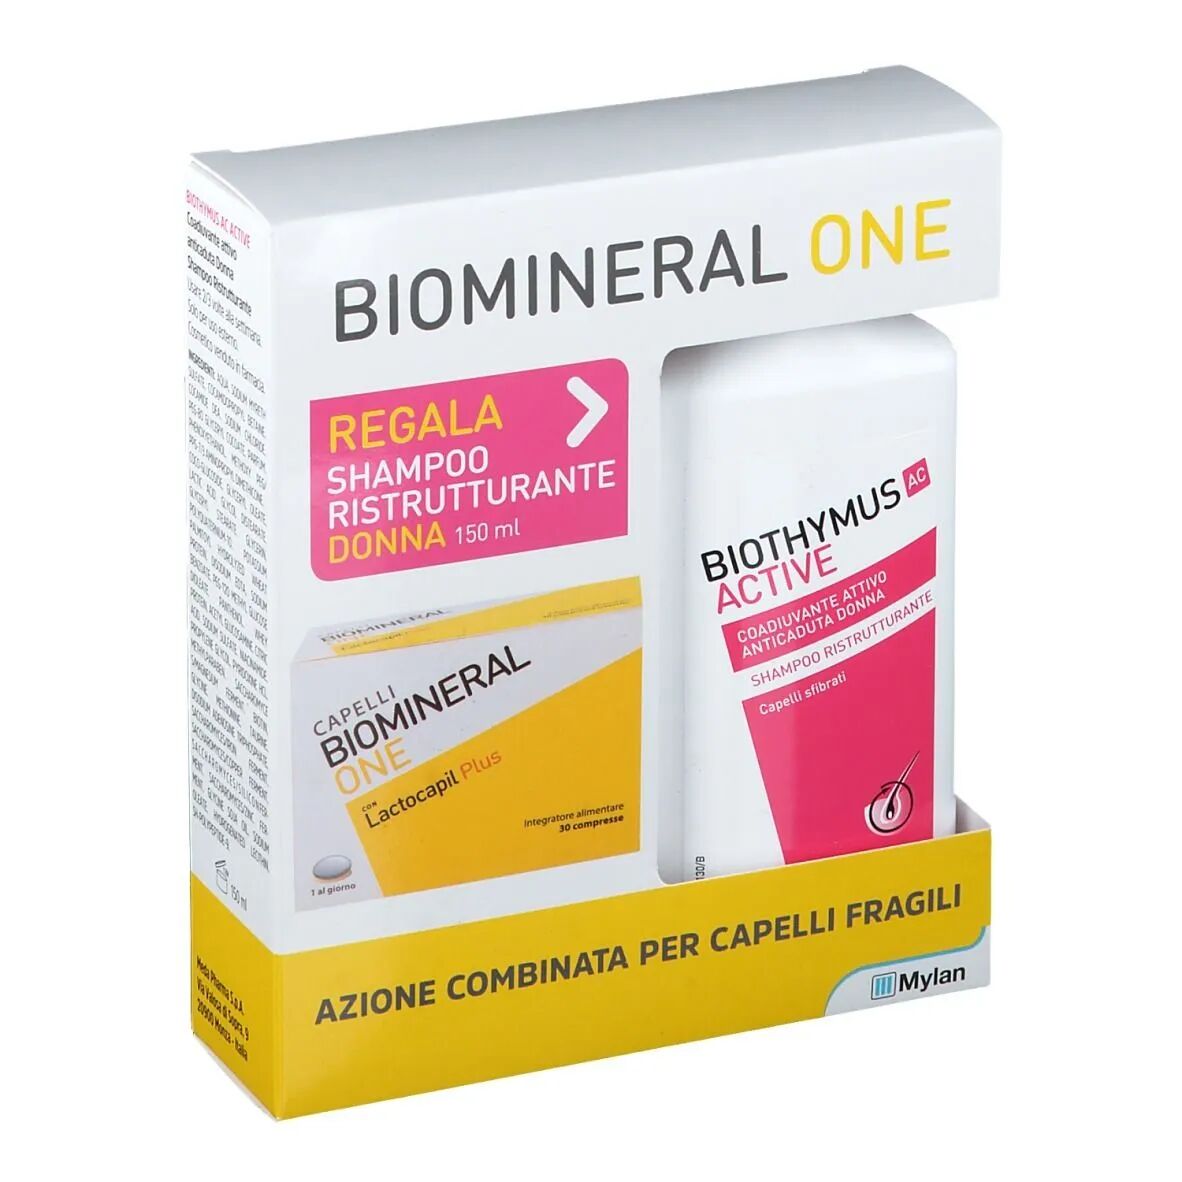 Biothymus Biomineral One Lactocapil Plus Integratore Capelli 30 Compresse + Shampoo Ristrutturante Donna 150 ml